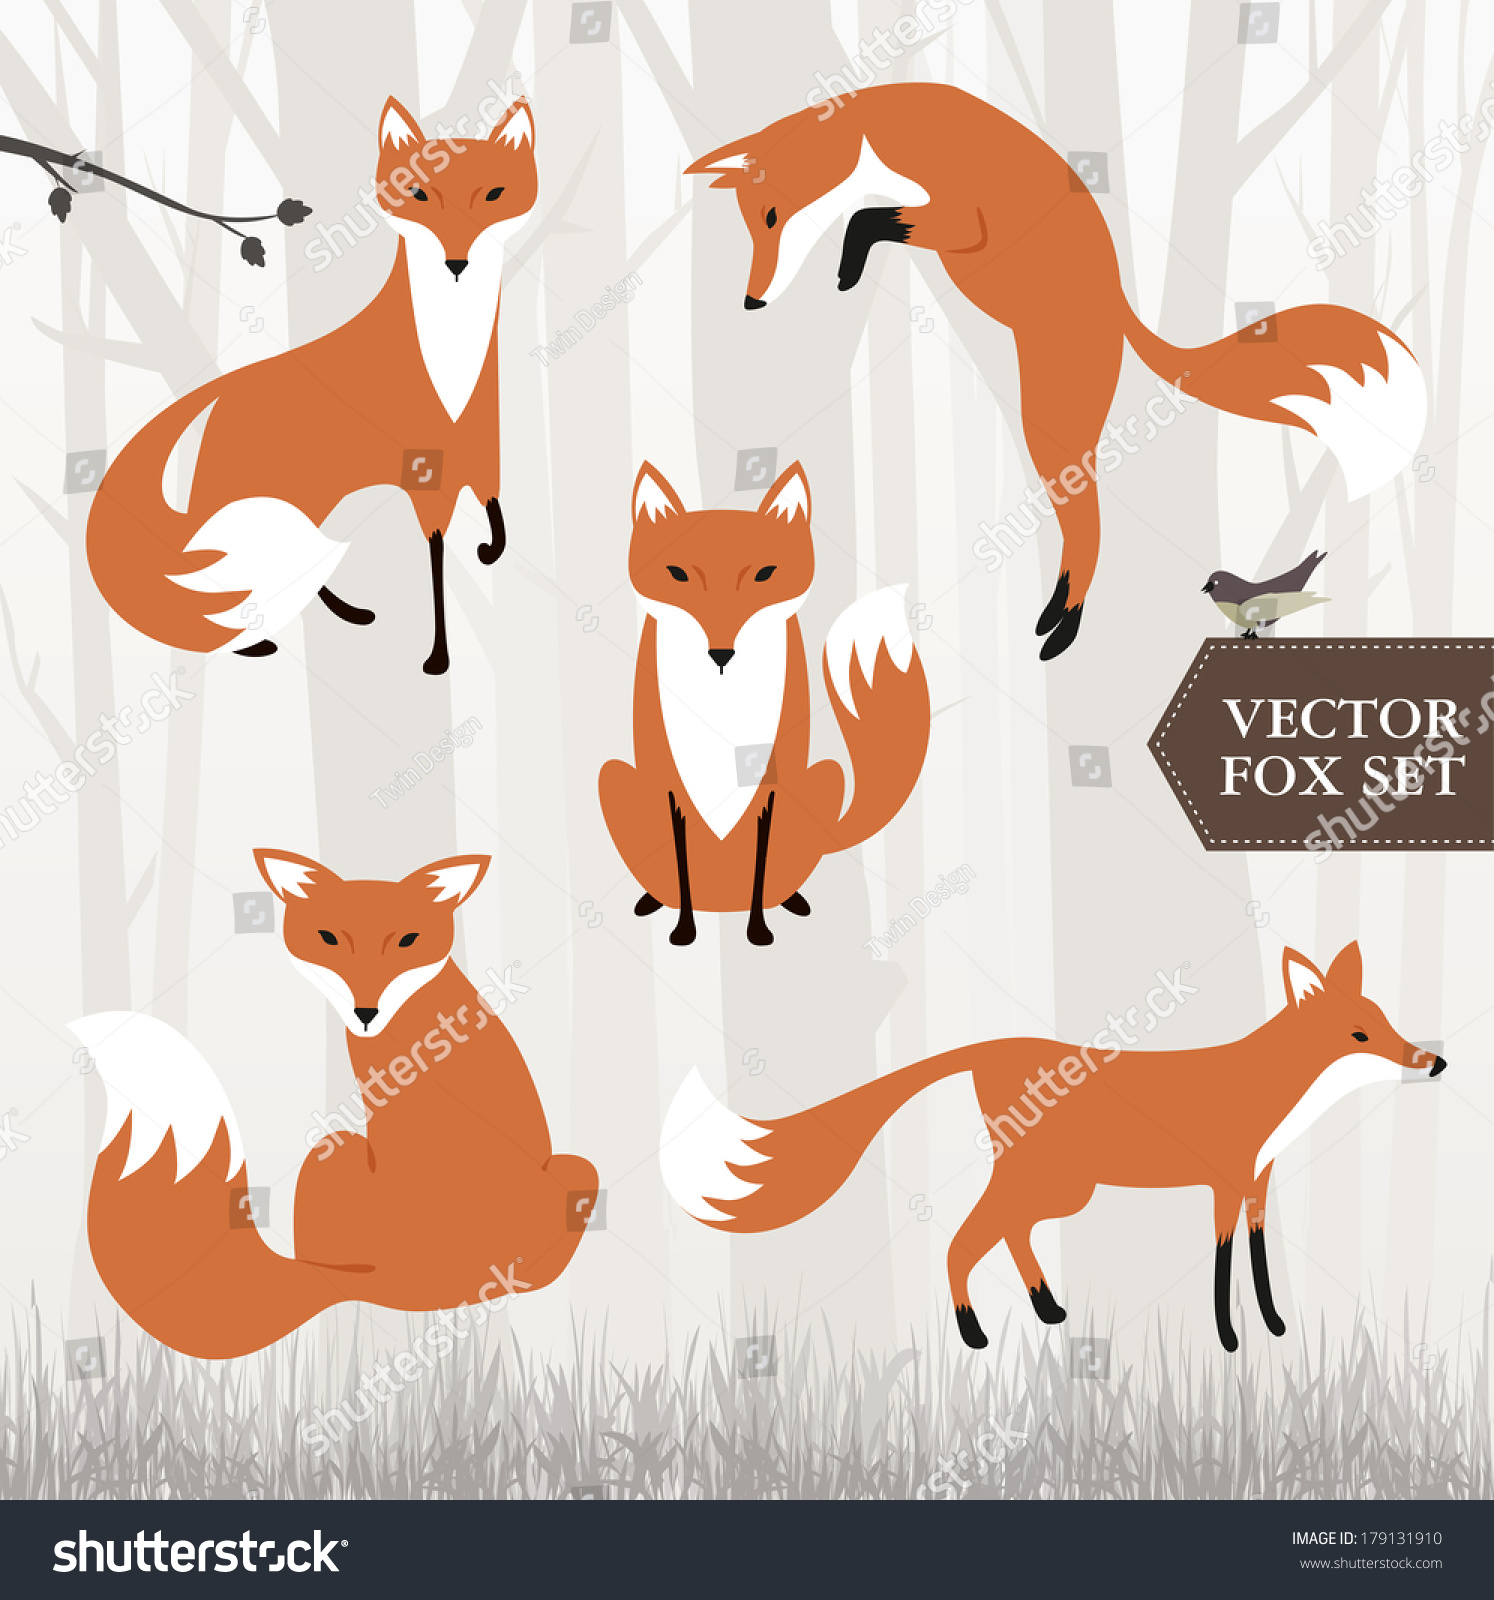 Fox Stock Vector Illustration 179131910 : Shutterstock